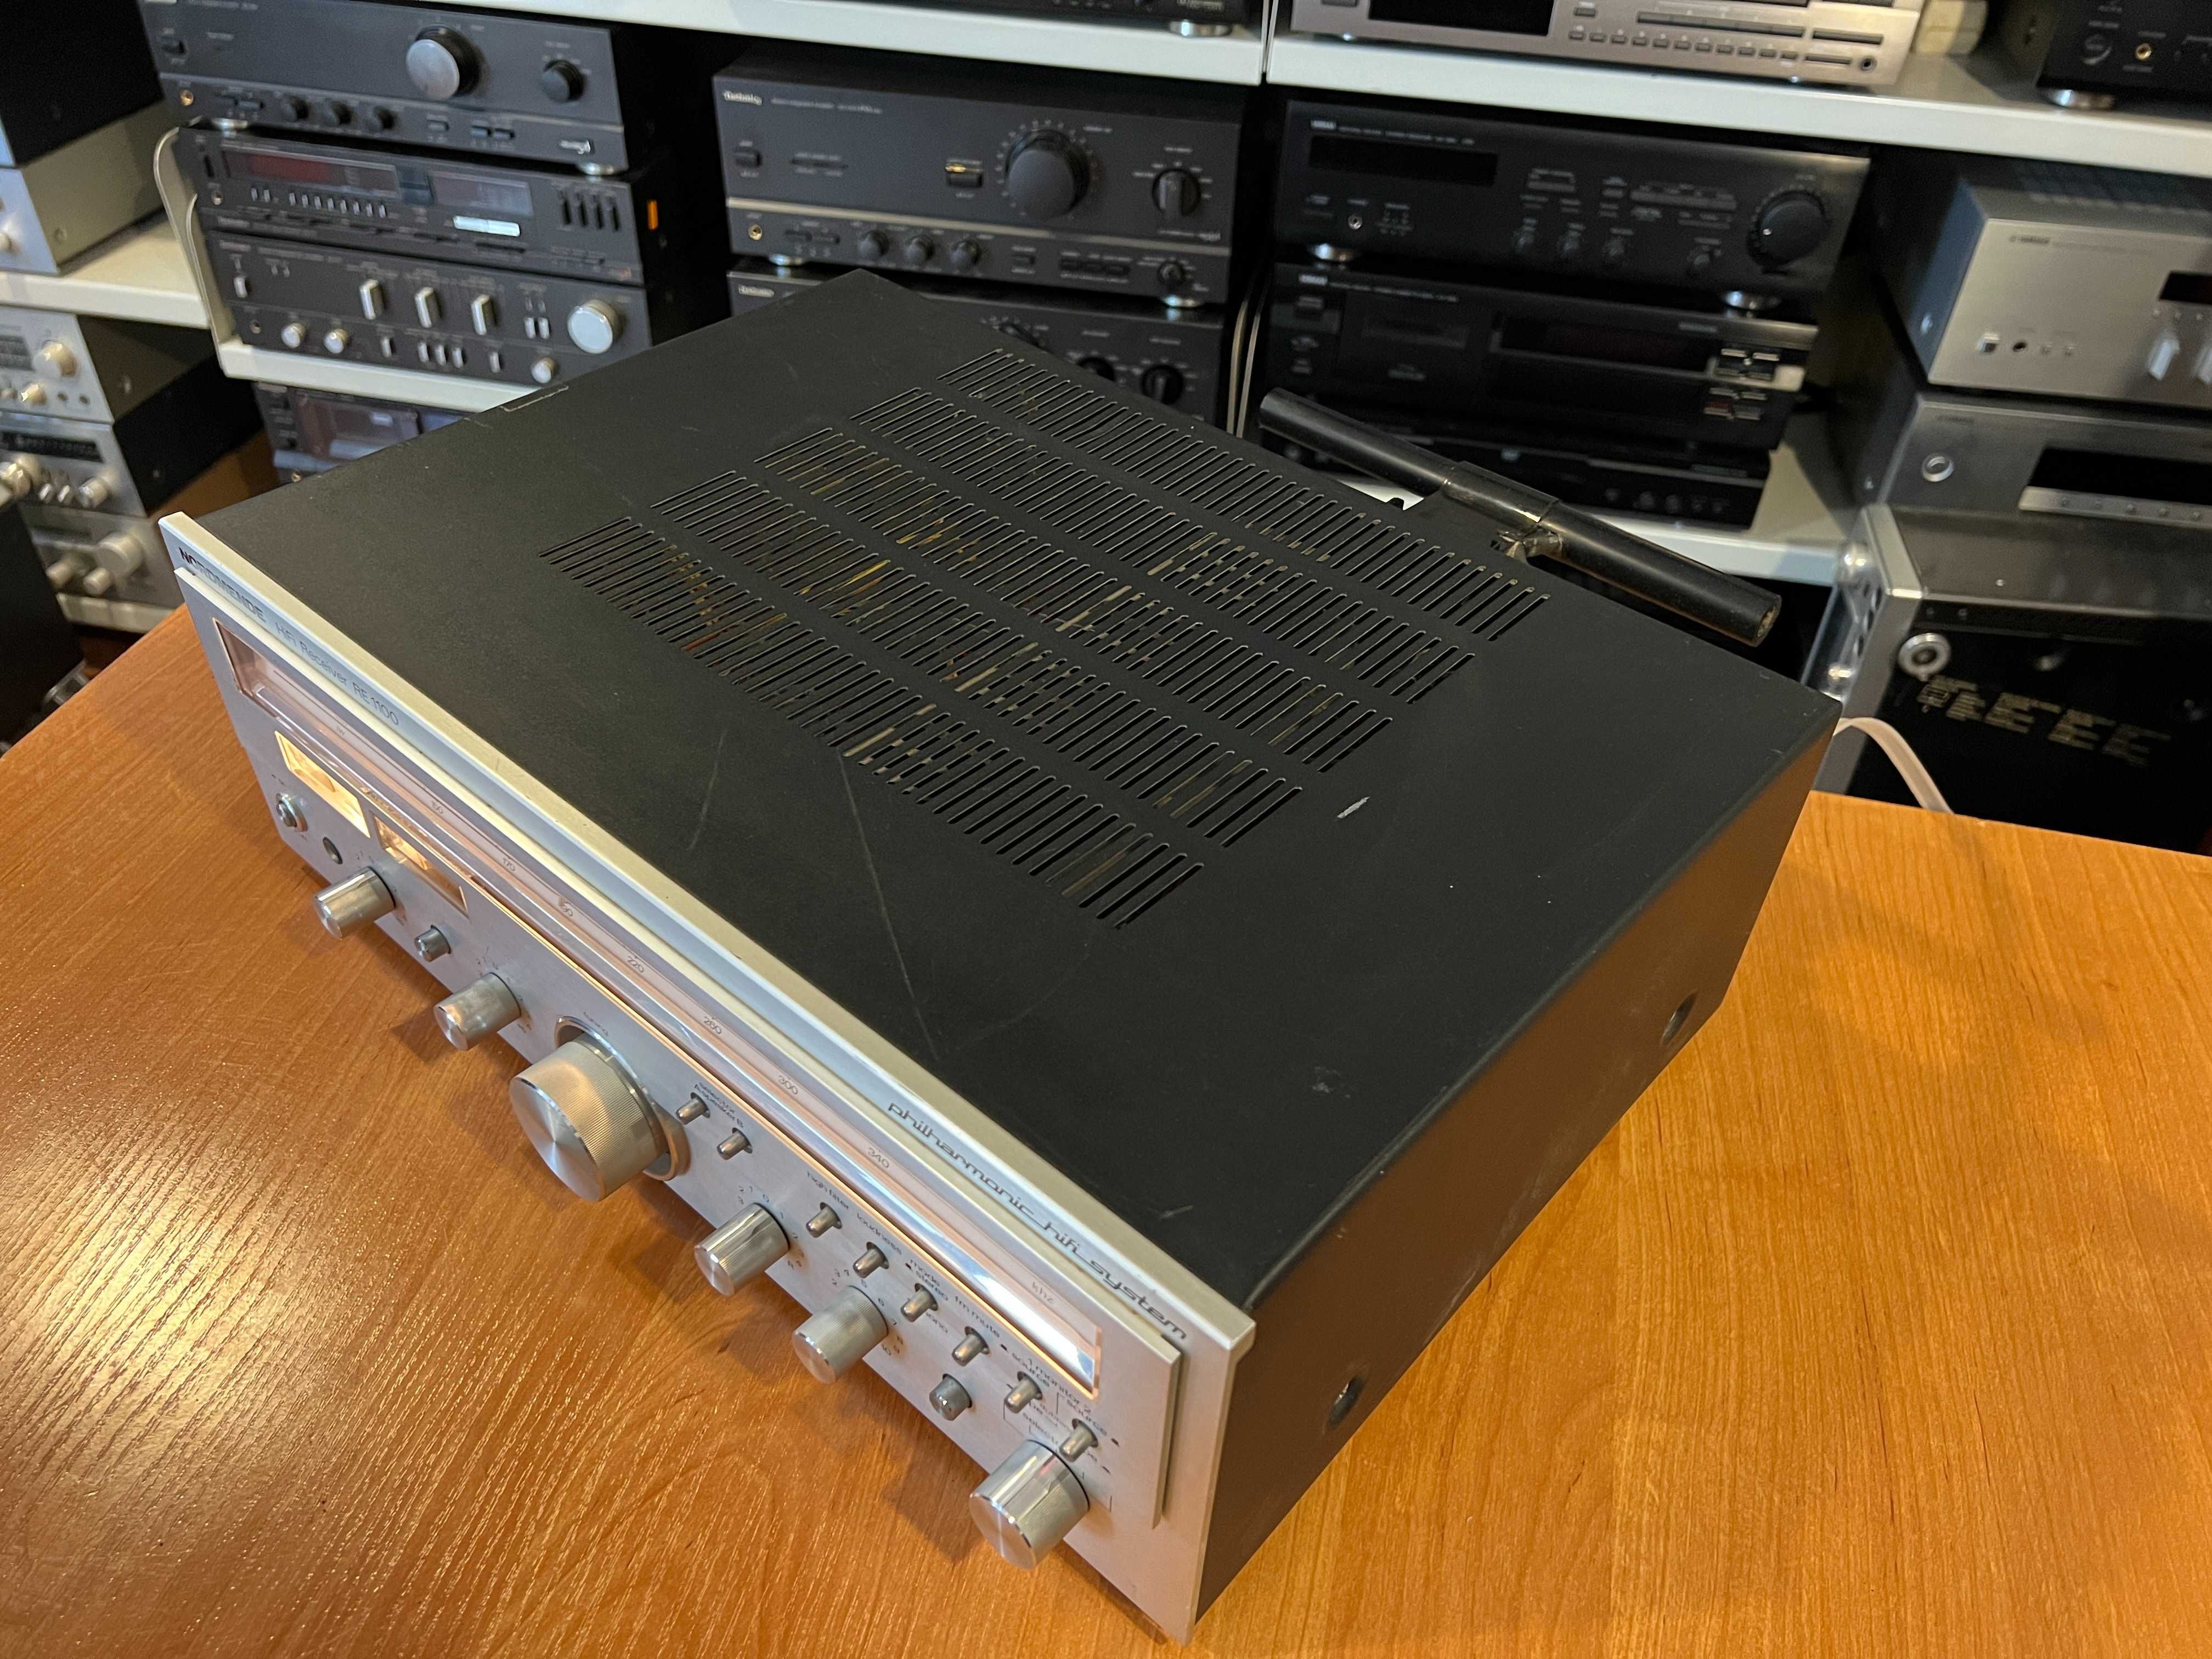 Amplituner Nordmende RE 1100 Vintage, Audio Room